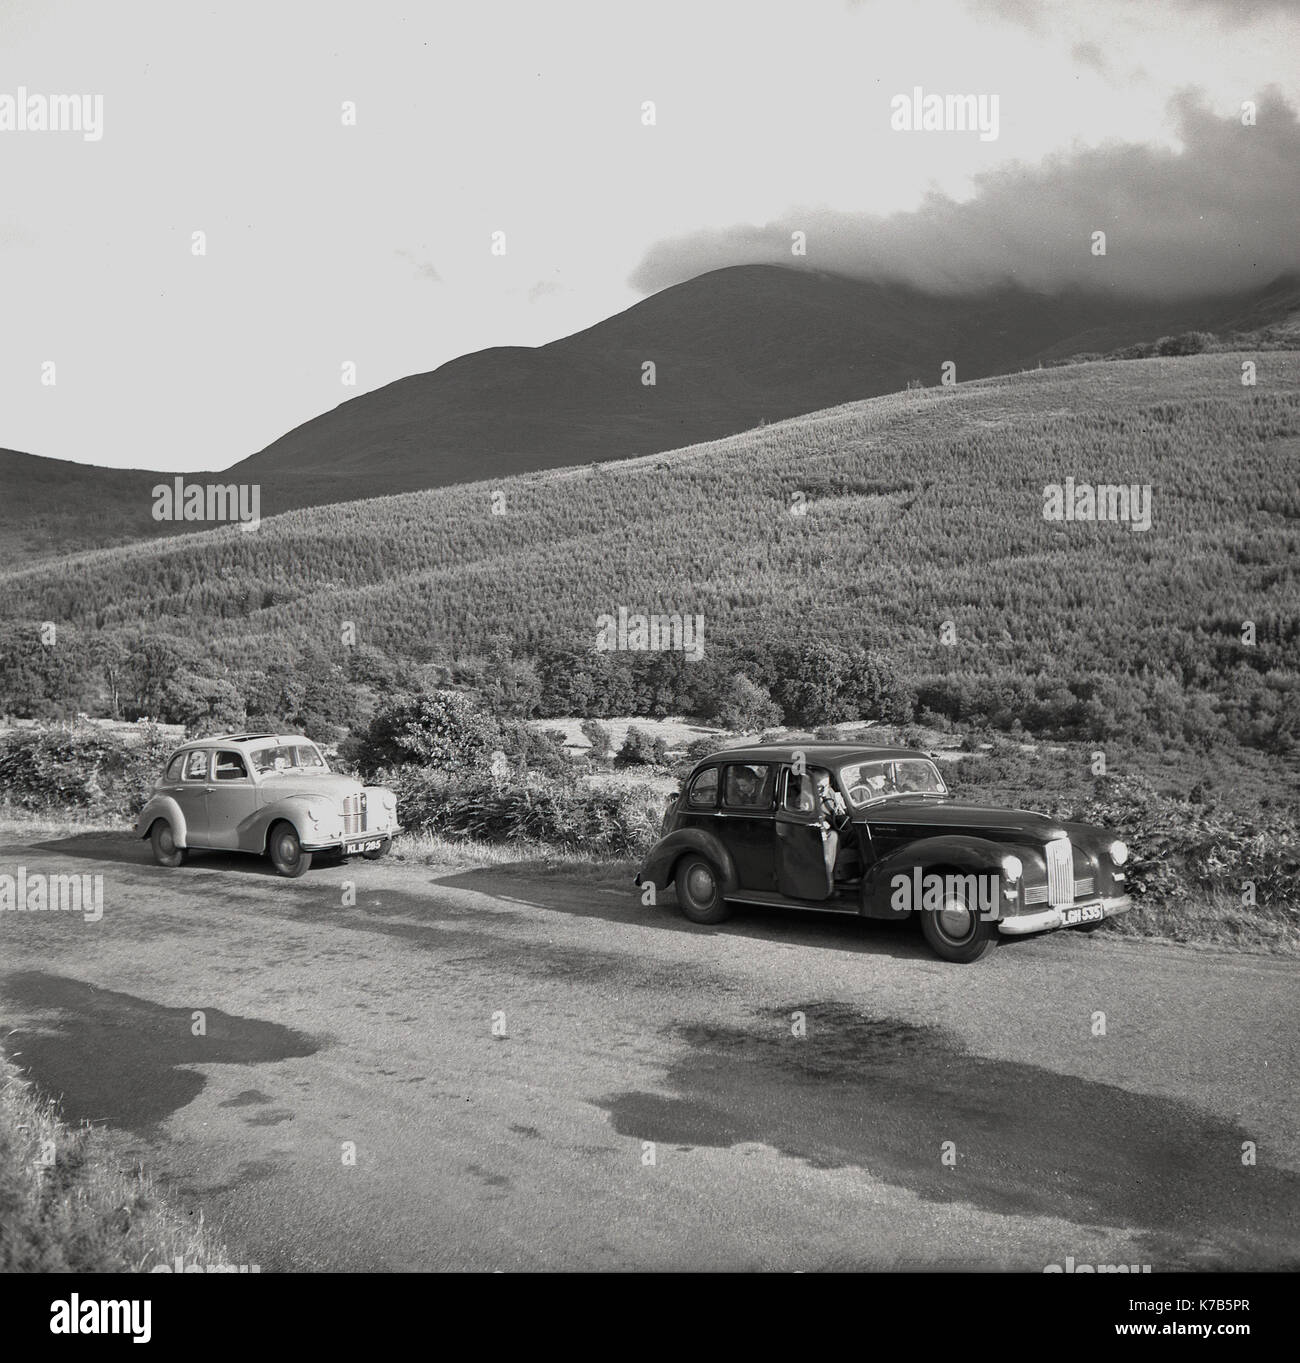 Dans les années 1950, deux voitures de berline historiques de l'époque se sont garées sur une route de campagne tranquille en Irlande du Nord, pour admirer les vues spectaculaires sur les montagnes Mourne. Banque D'Images